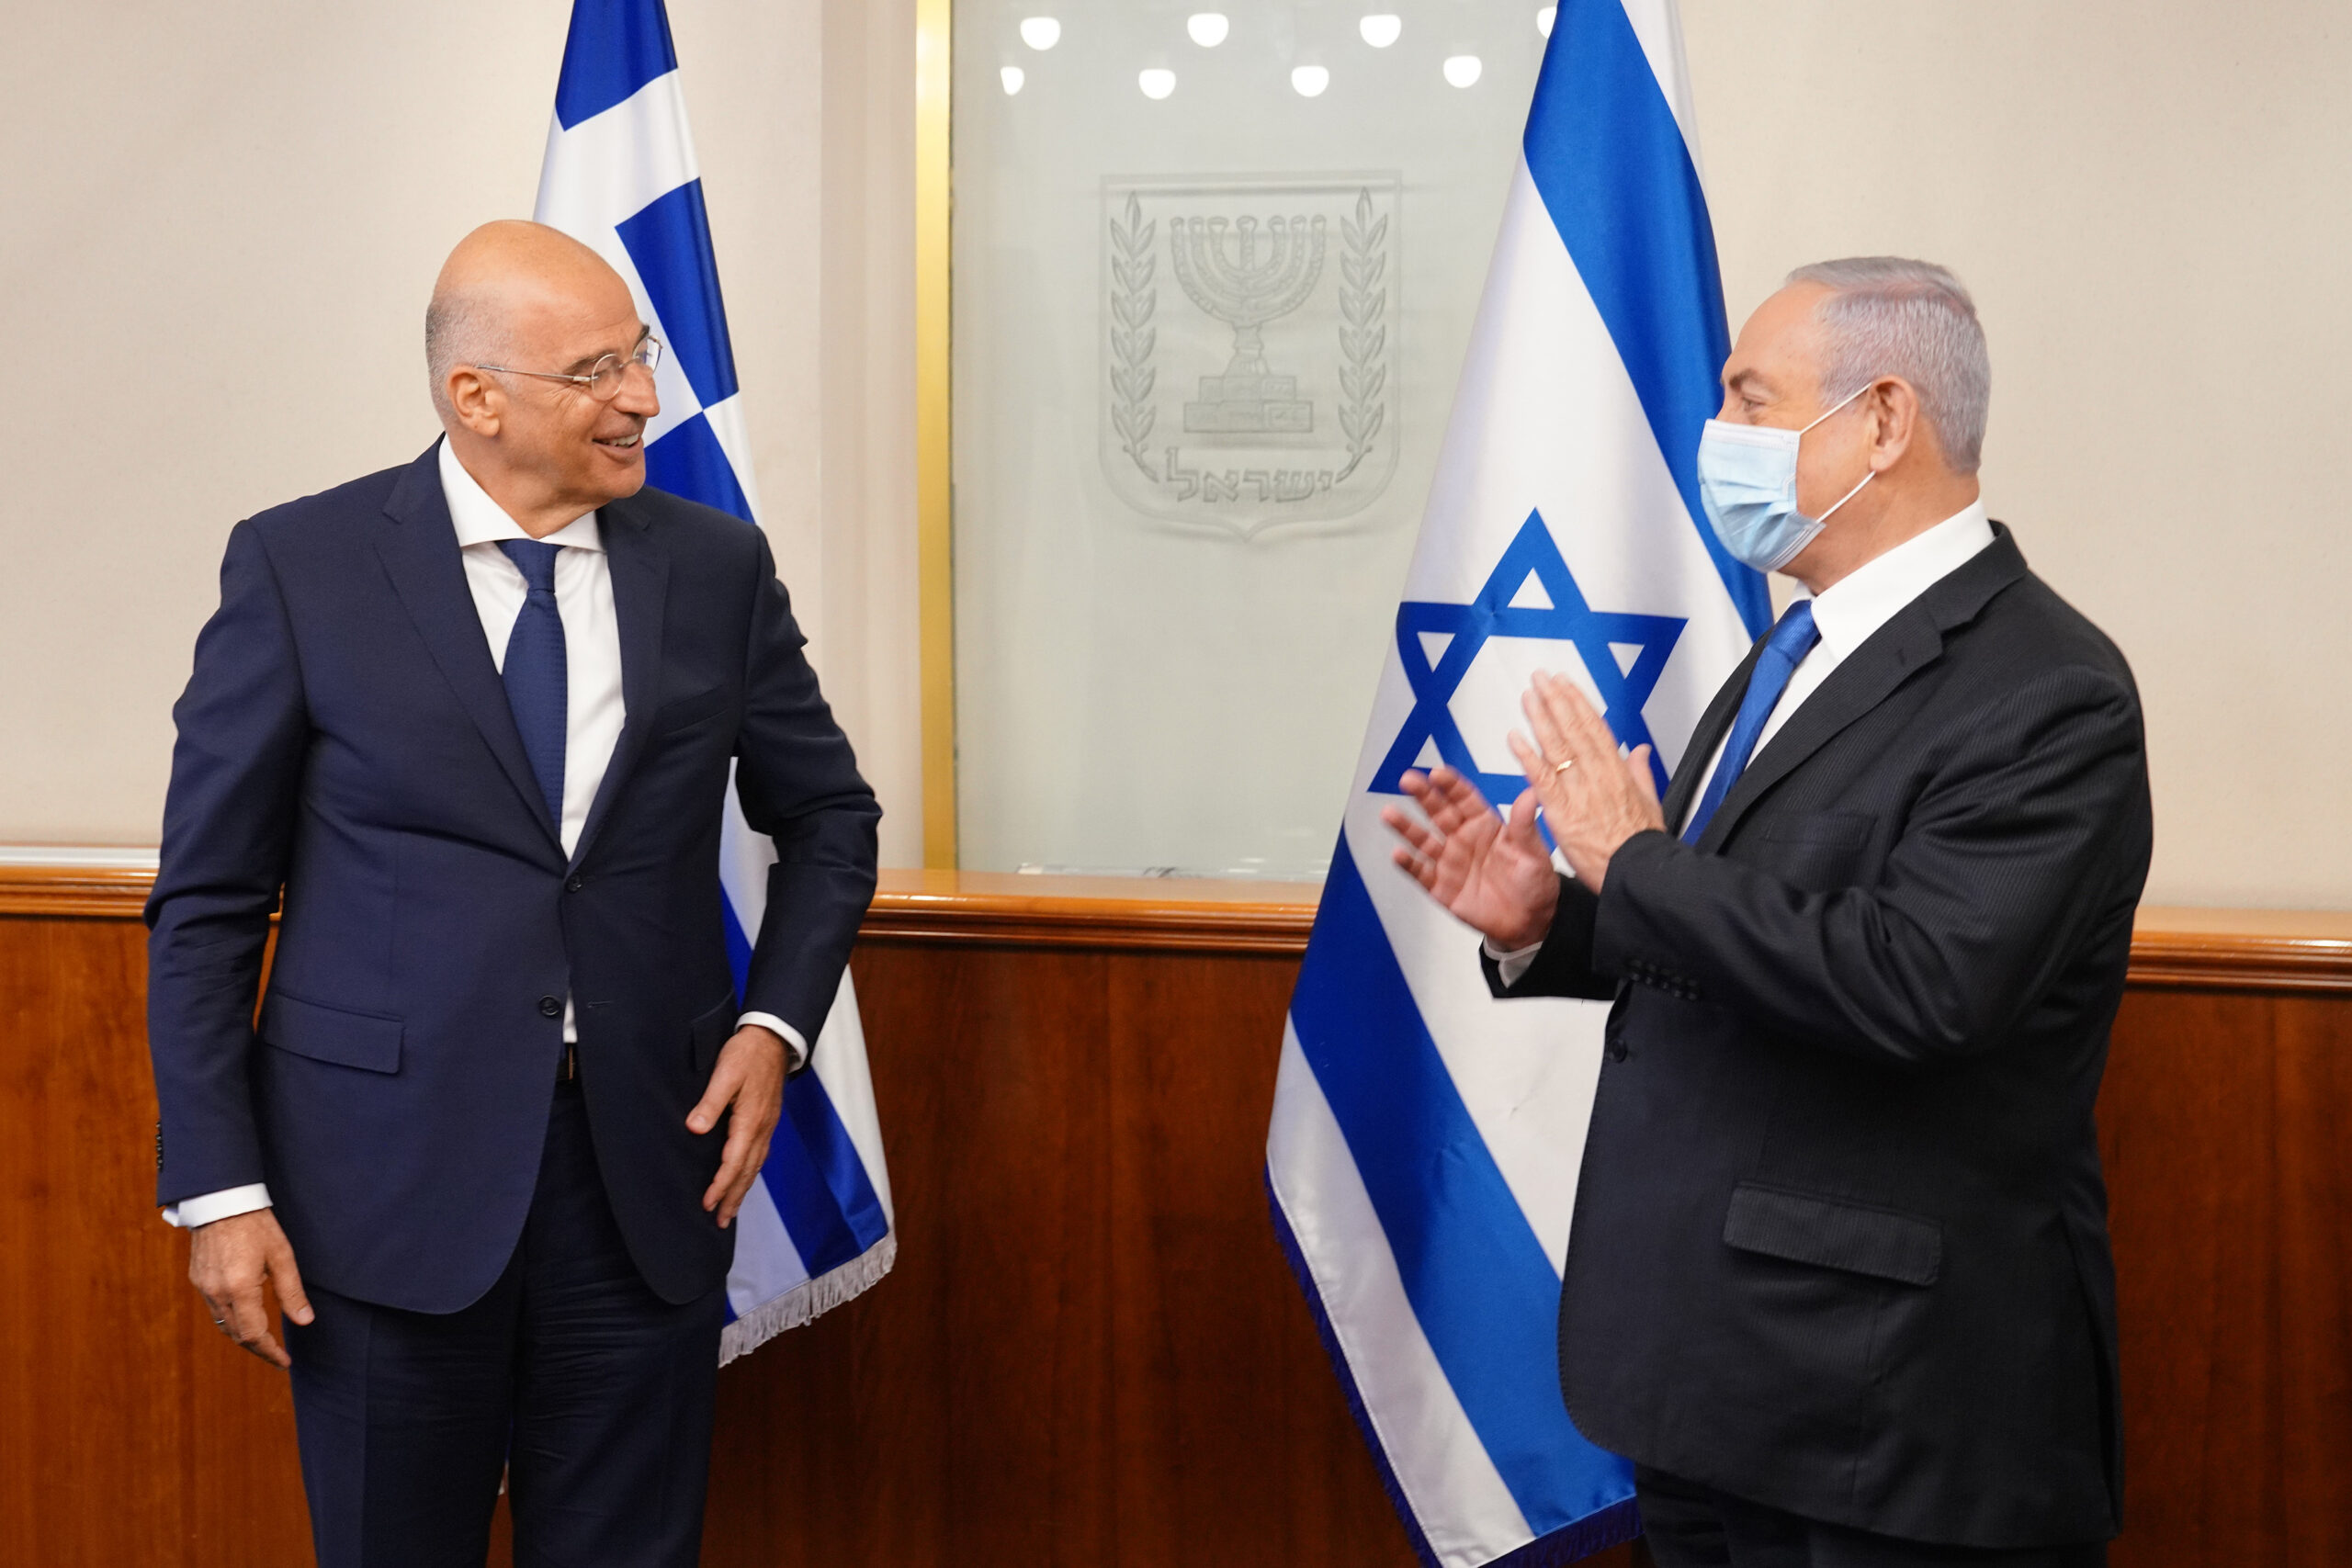 Επίσκεψη του Υπουργού Εξωτερικών, Νίκου Δένδια, στο Ισραήλ, και συνάντηση με τον Πρωθυπουργό του Ισραήλ, Benjamin Netanyahu.,  (Ιερουσαλήμ,13.08.2020)